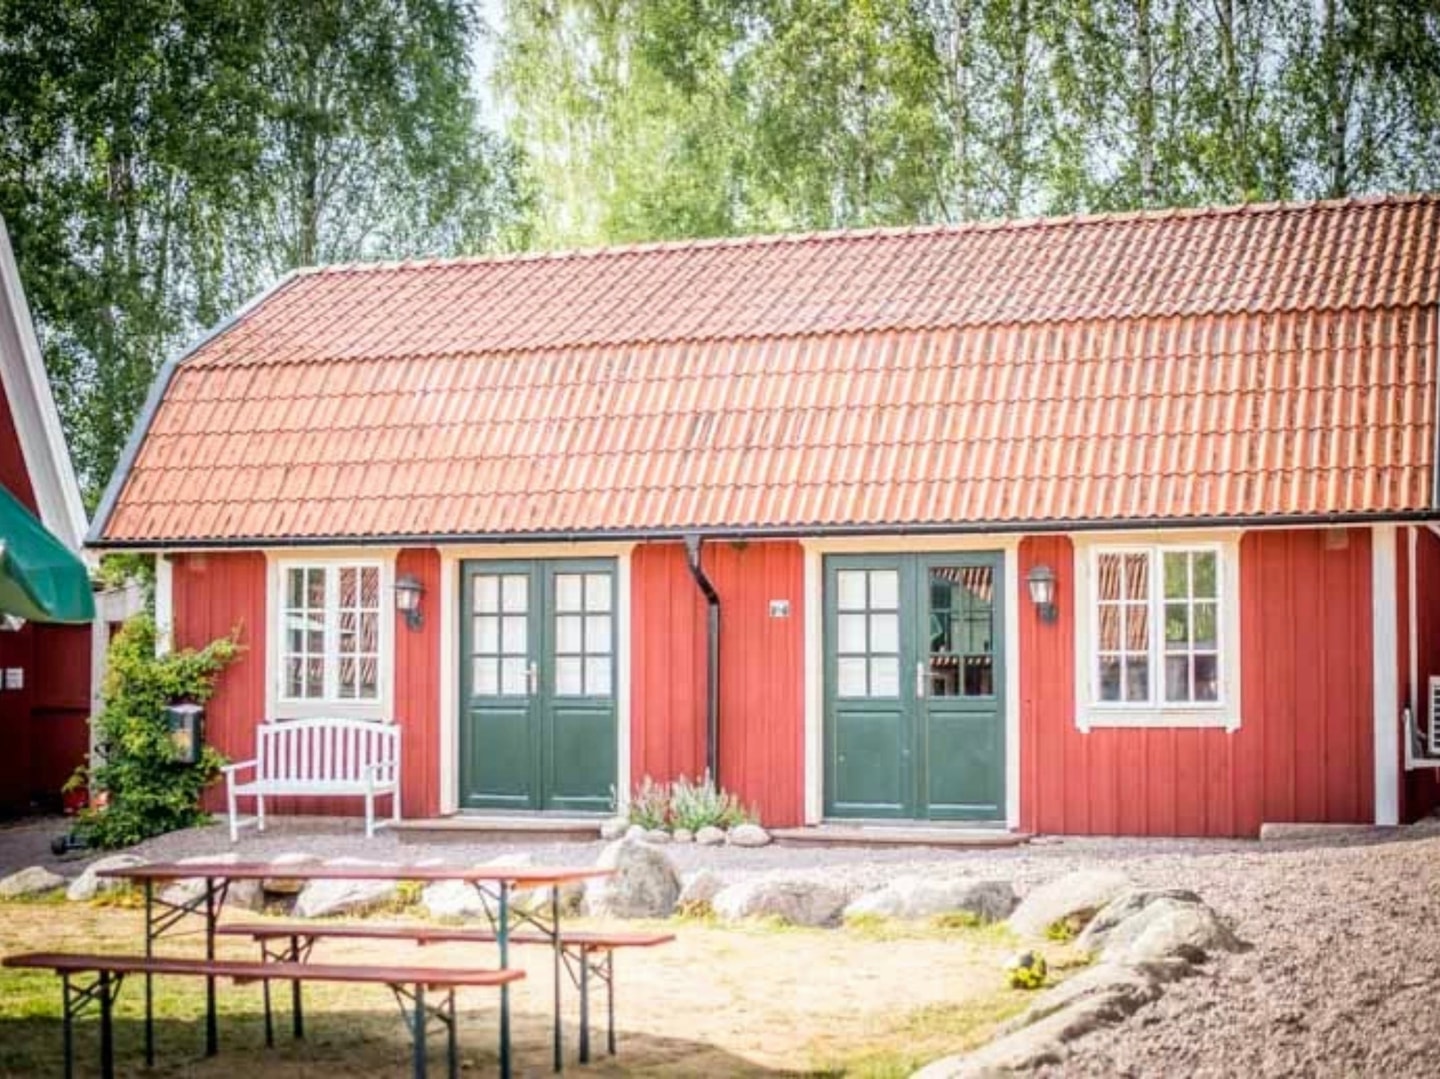 Hyr stuga i Vimmerby – promenadavstånd till Astrid Lindgrens värld (1 av 21)